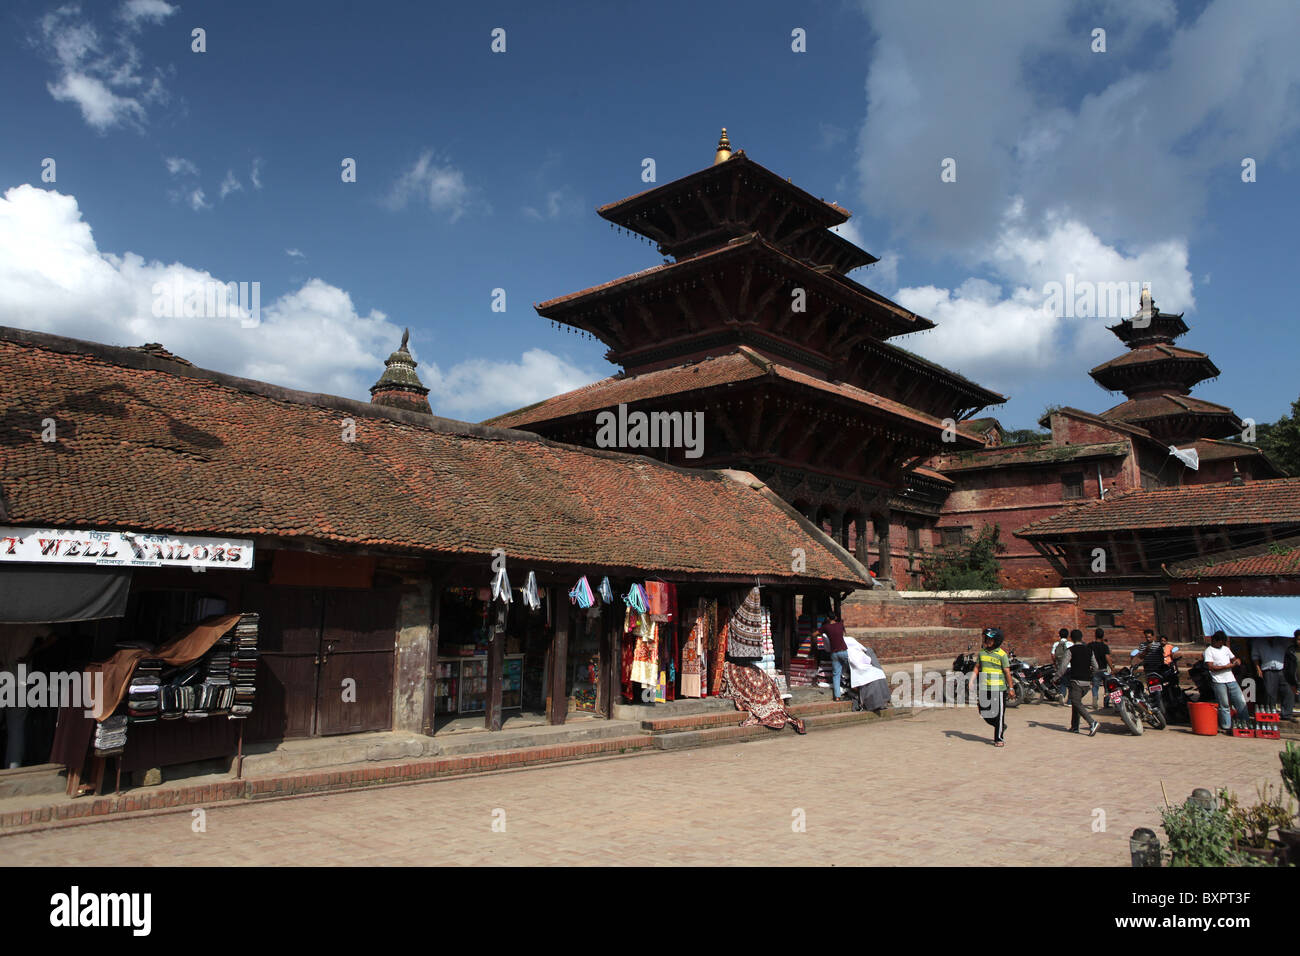 Vues de Durbar Square, Patan, Vallée de Kathmandou, Népal, Asie Banque D'Images